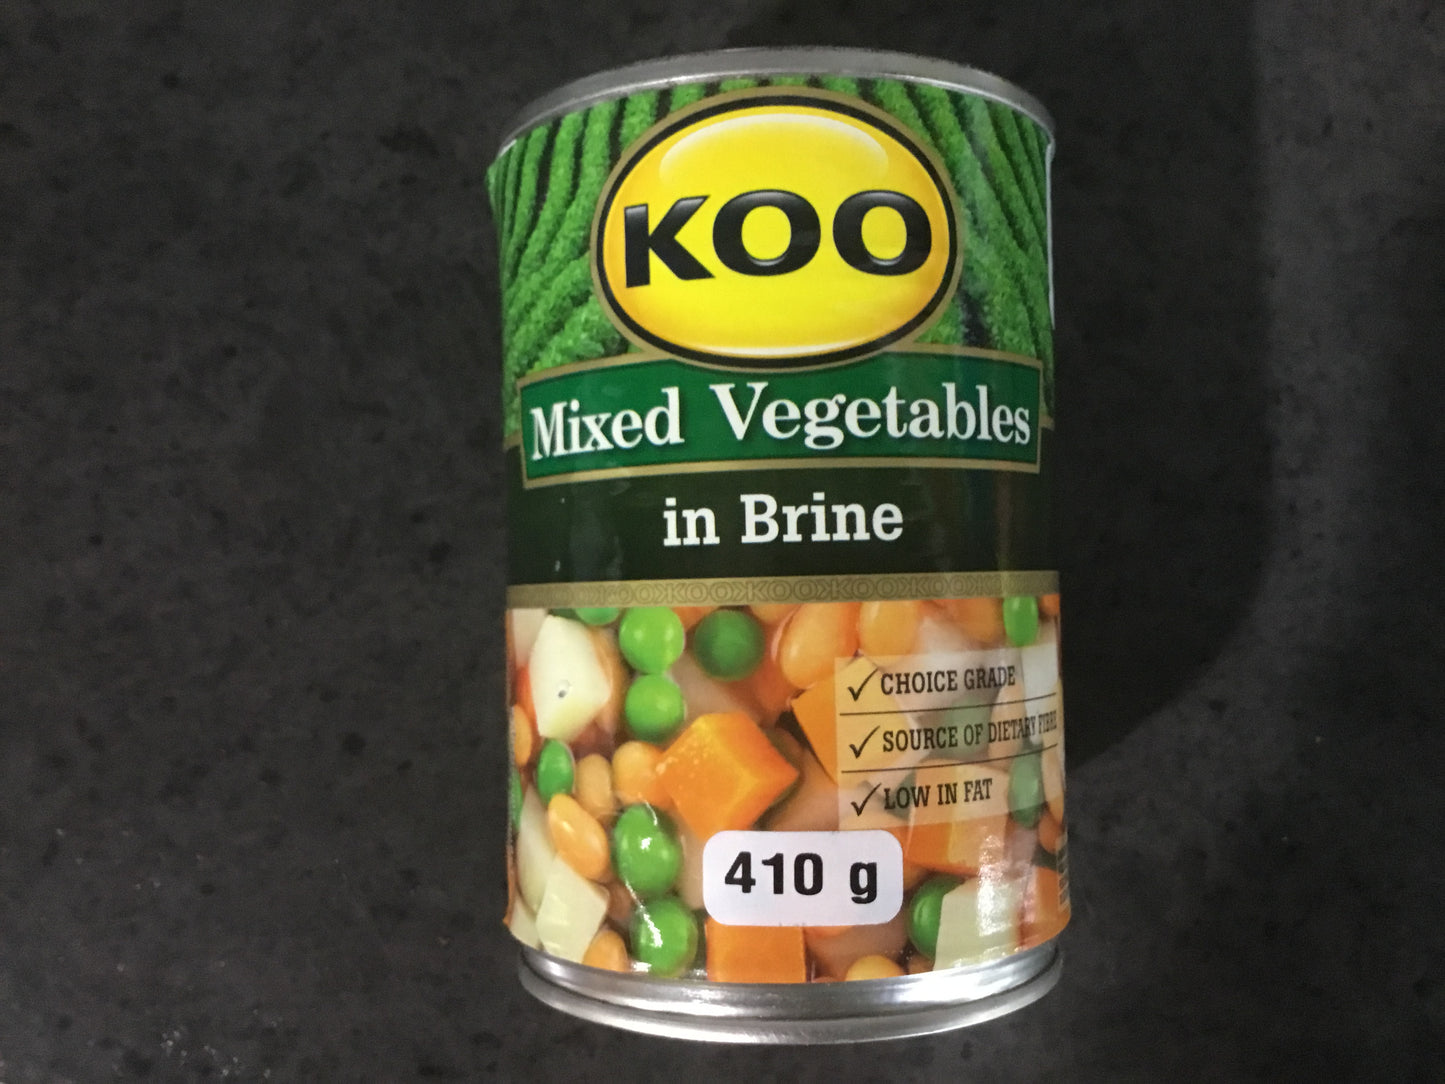 Koo Mix Vegetables in Brine 410g